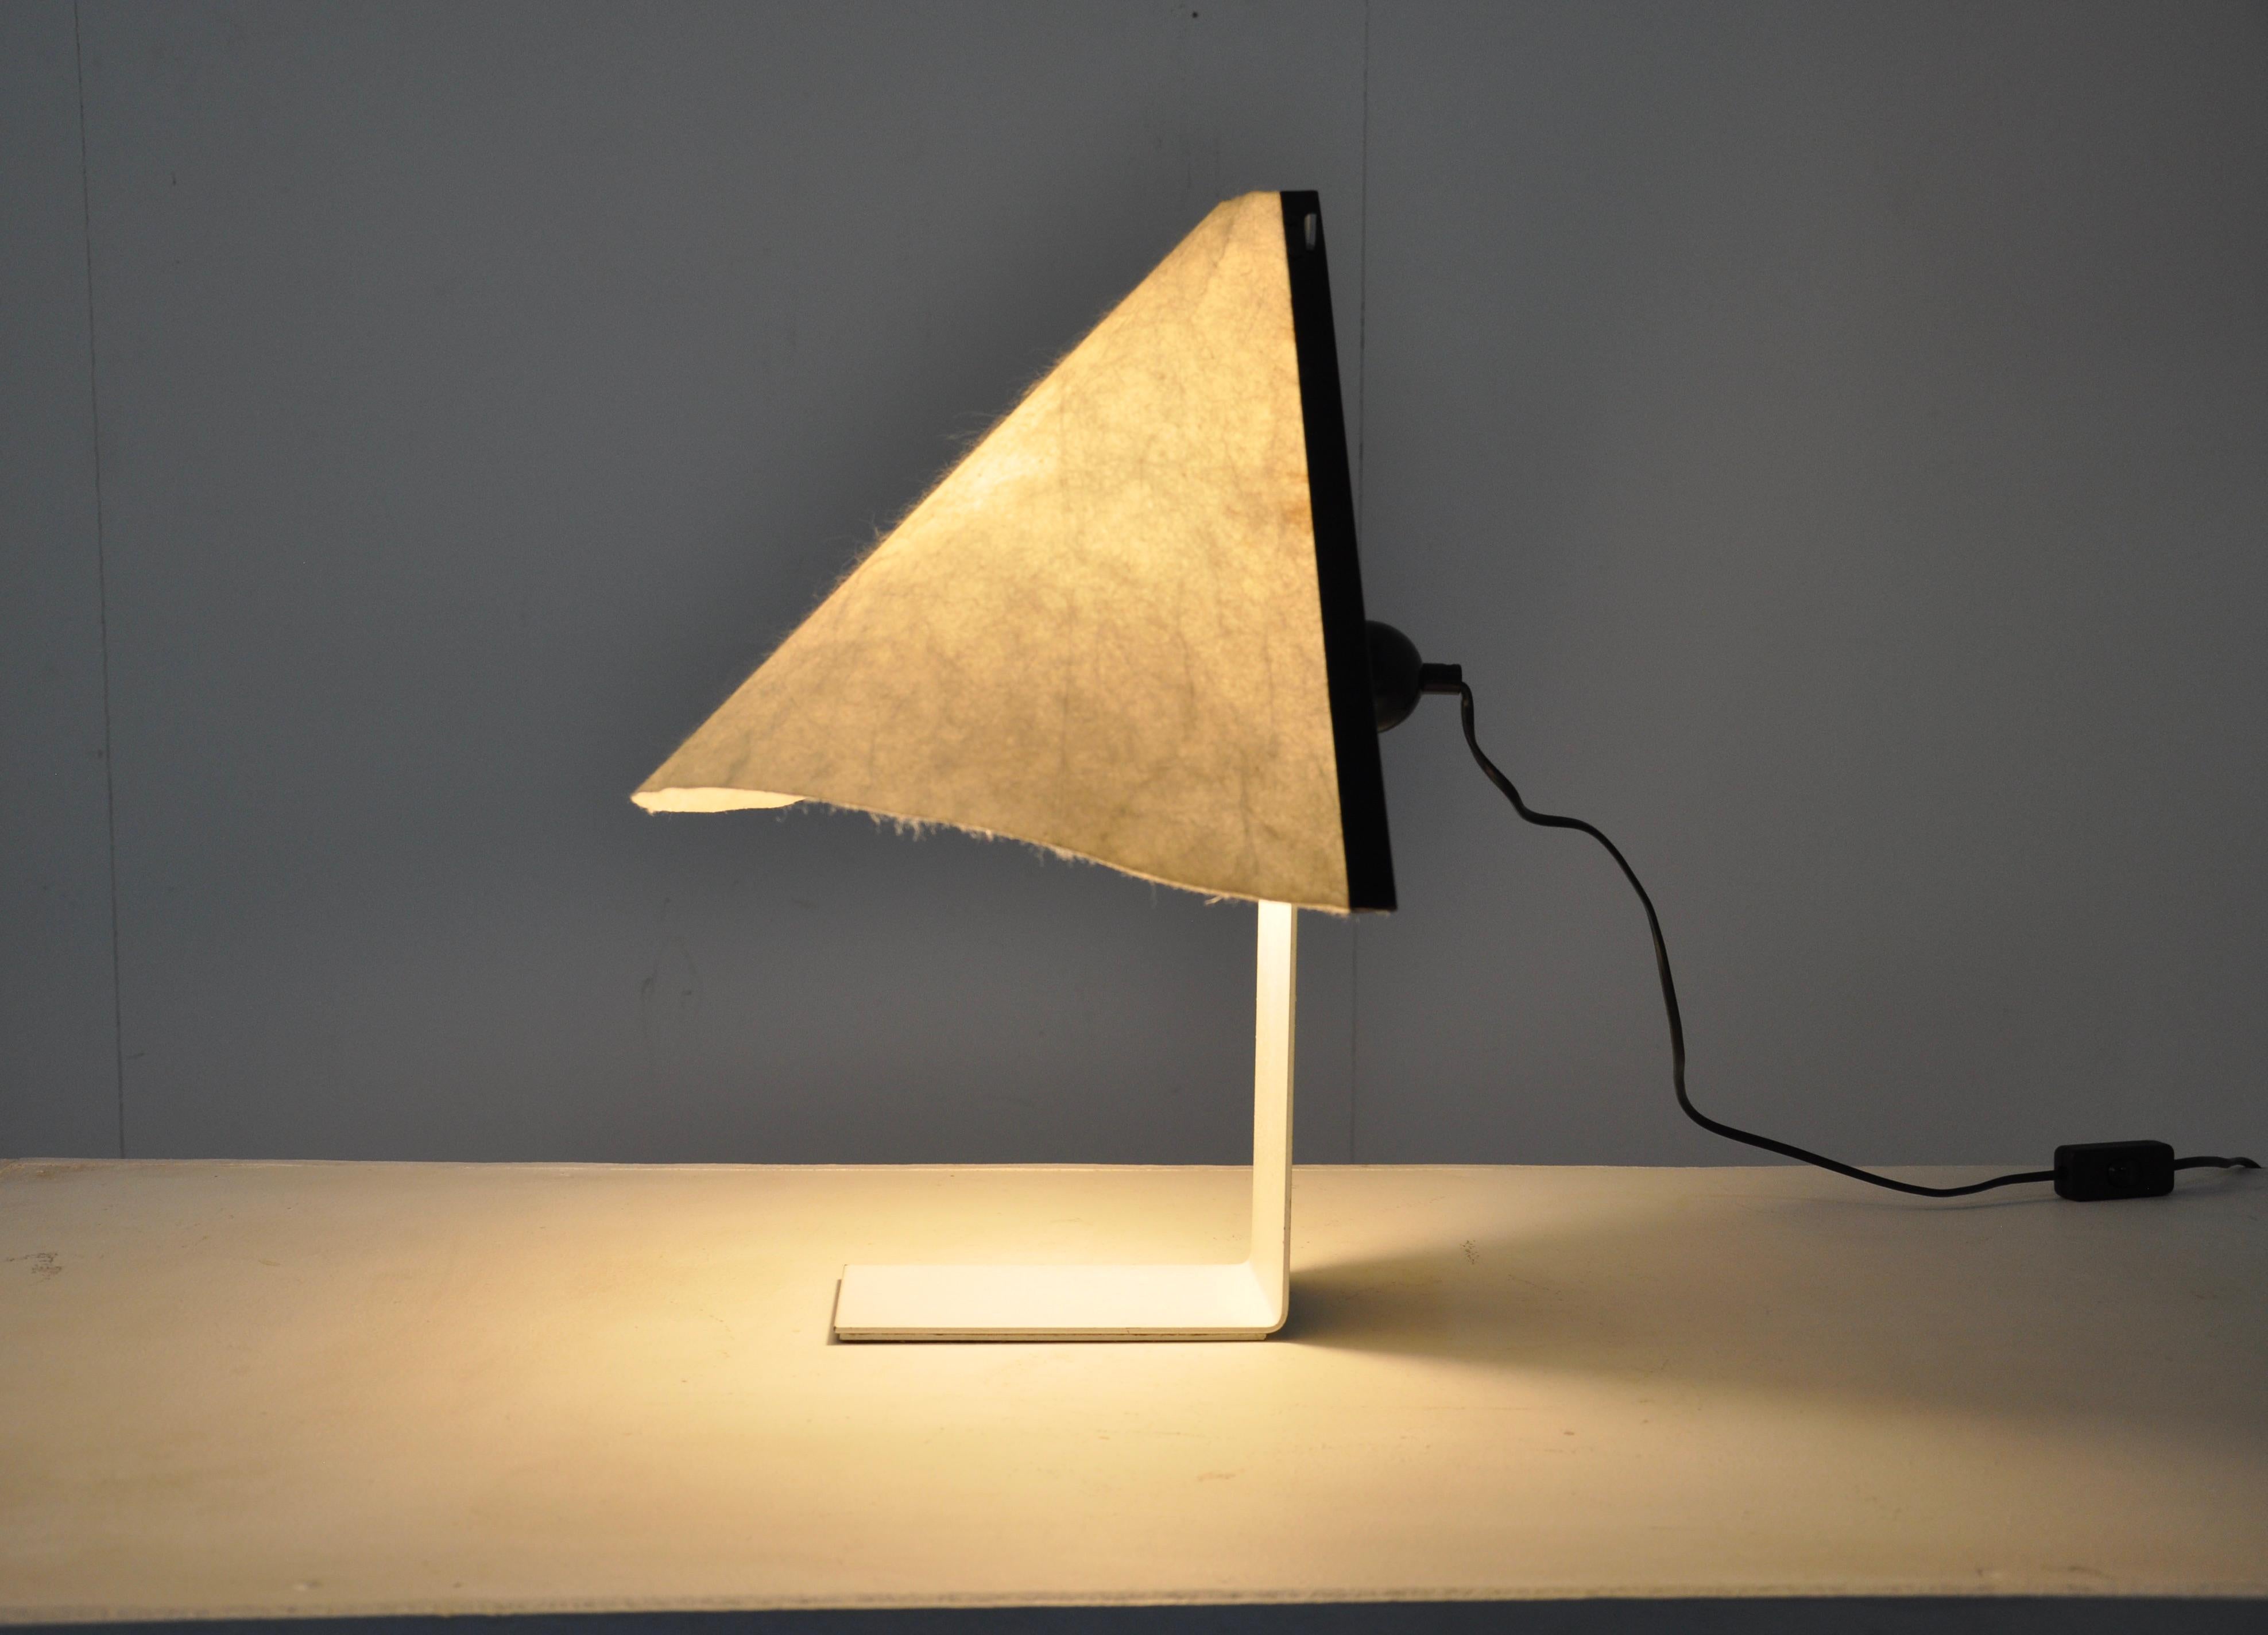 Paper Porsenna Lamp by Vico Magistretti for Artemide, 1970s